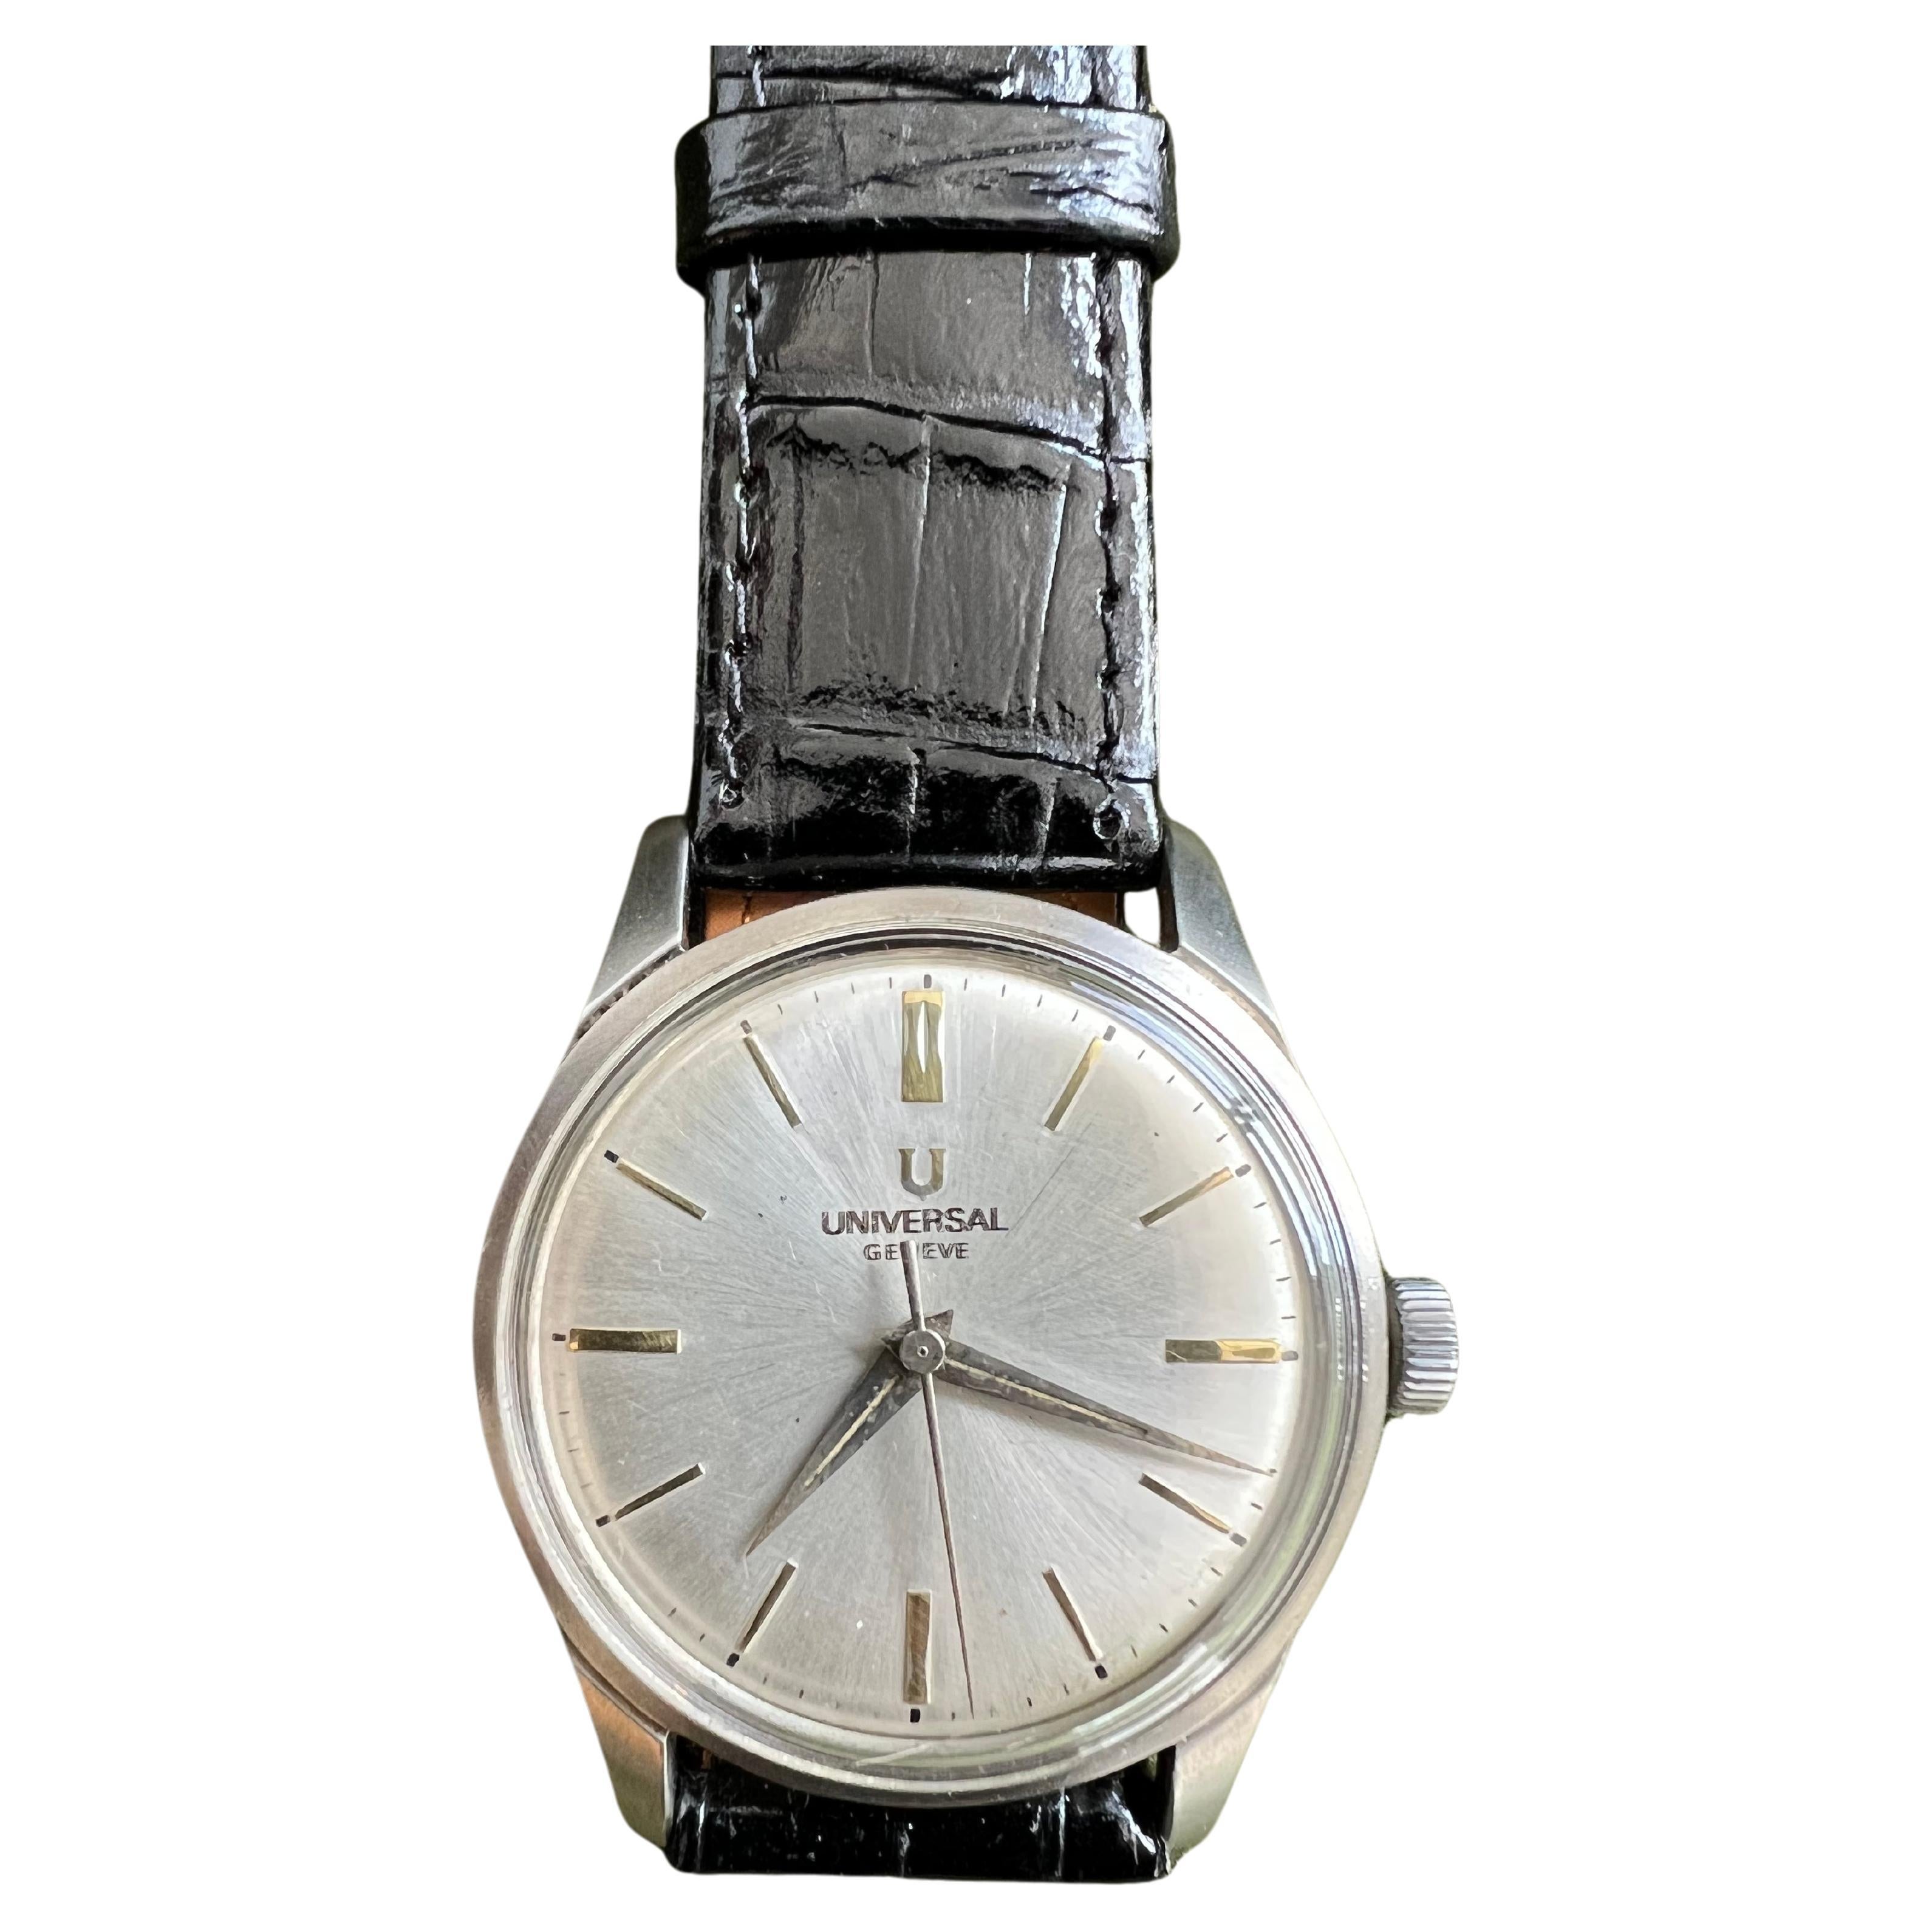 Eine makellose und elegante Armbanduhr aus den frühen 60er Jahren.
Weißes Gesicht und goldene Zifferblätter 
Diese Uhr verfügt über die klassischen Proportionen, sowohl in Bezug auf die Größe als auch auf die Schlankheit, die eine Damenuhr haben